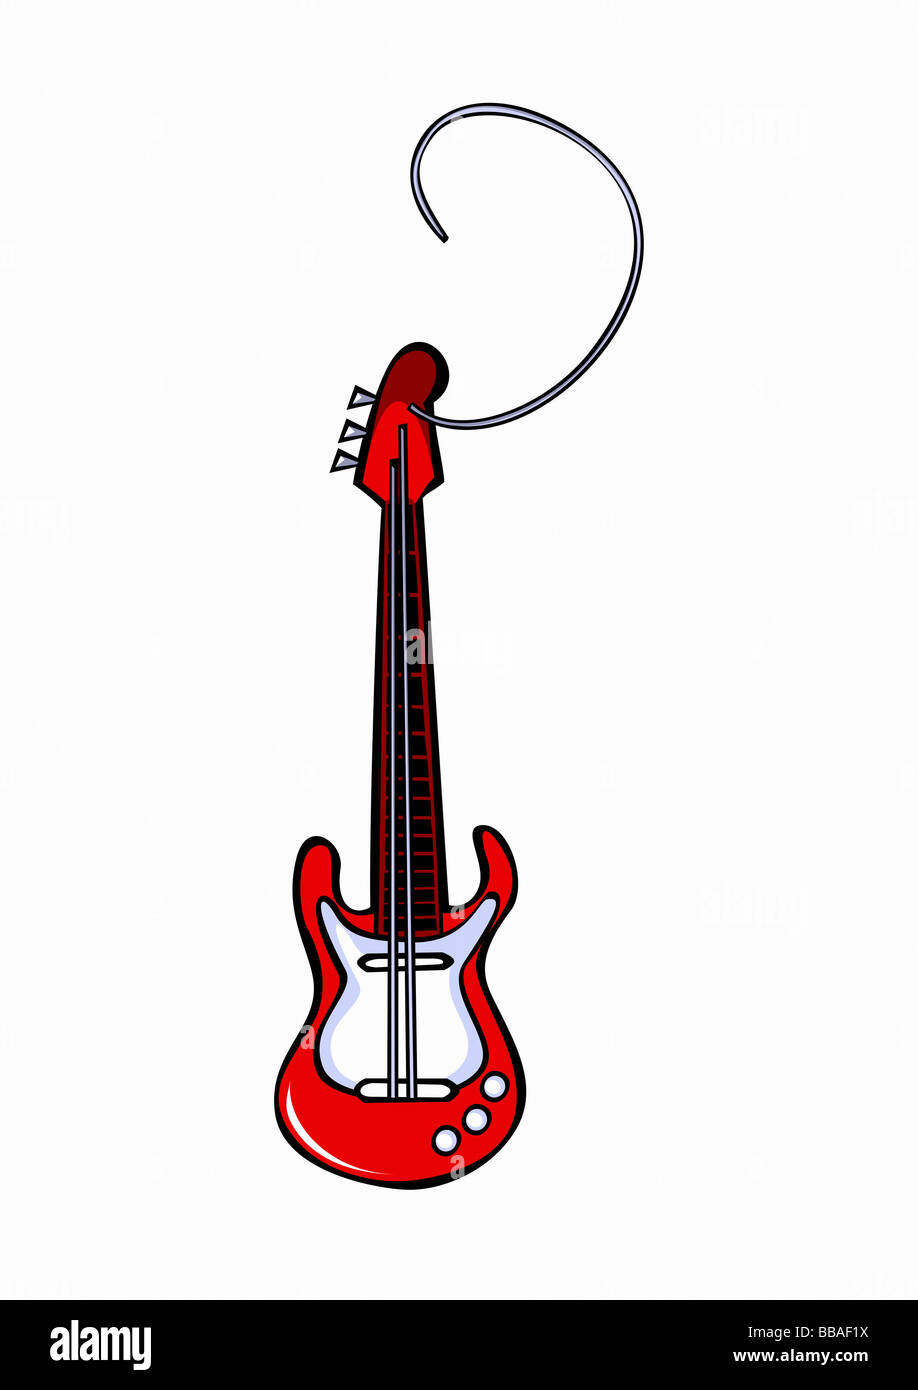 Une guitare avec une corde de guitare cassée Photo Stock - Alamy